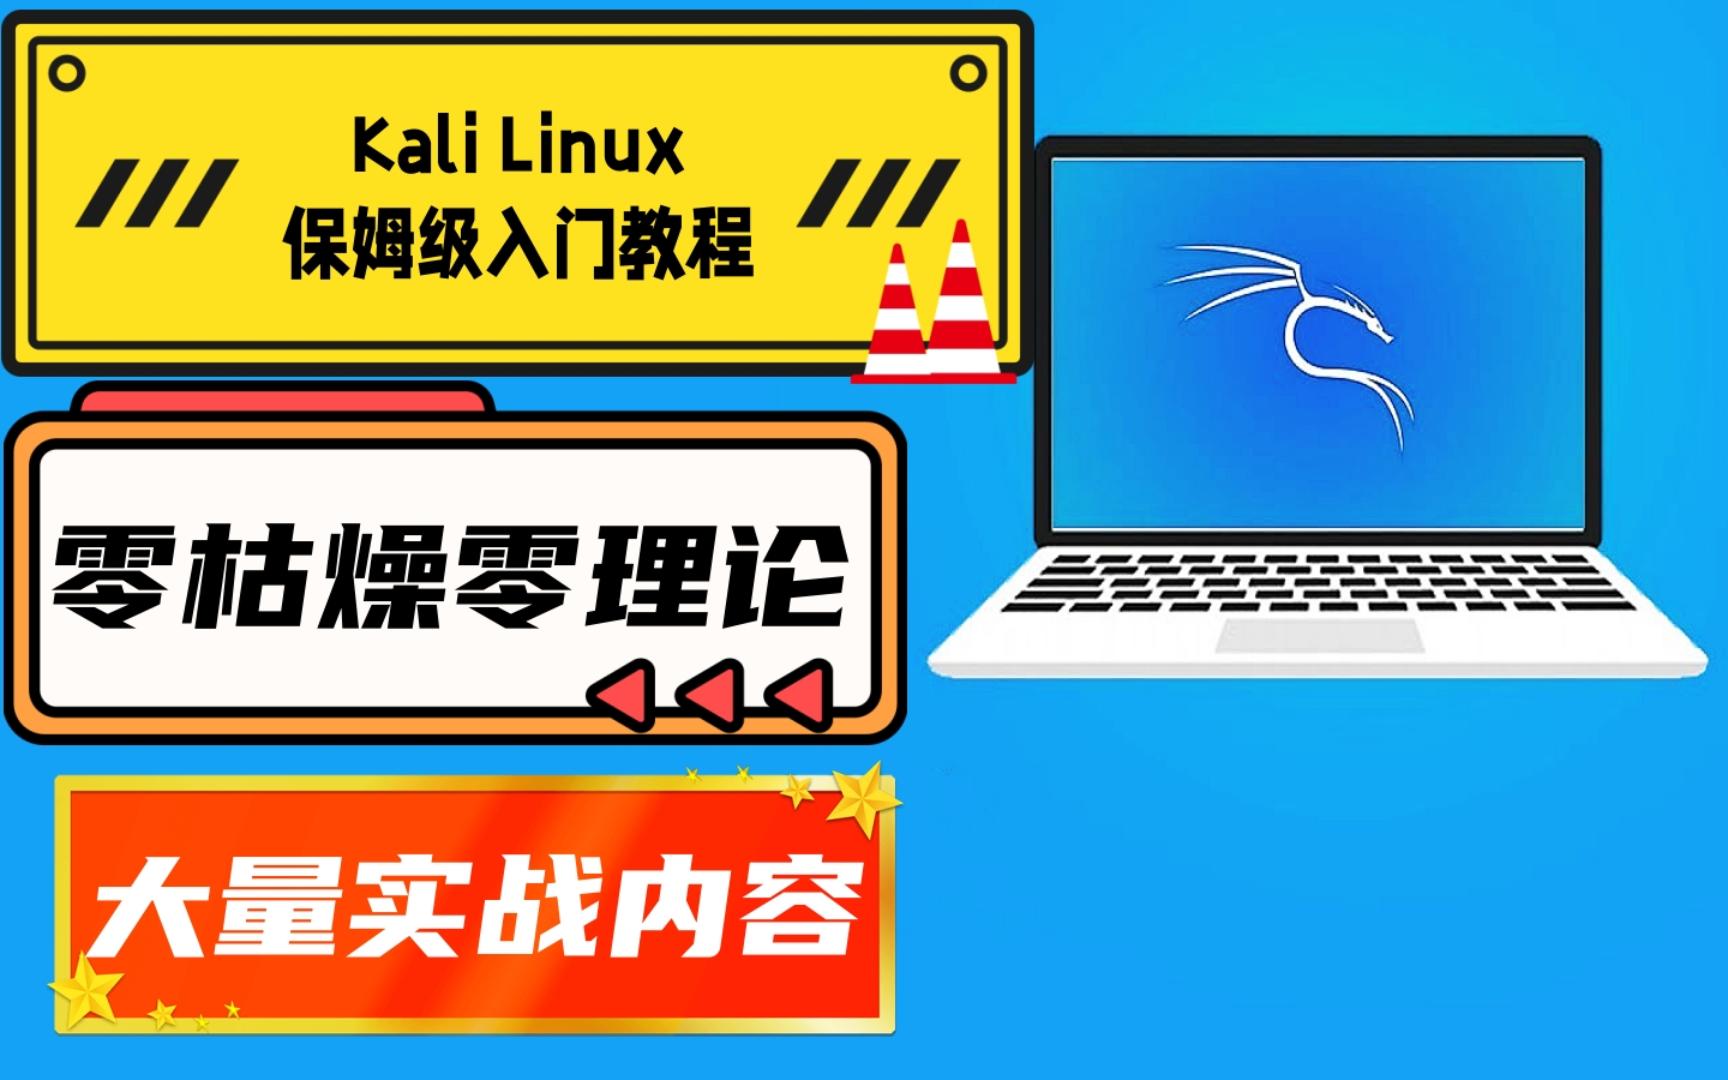 【极客之眼】全新Kali Linux零基础新手入门教程第四集